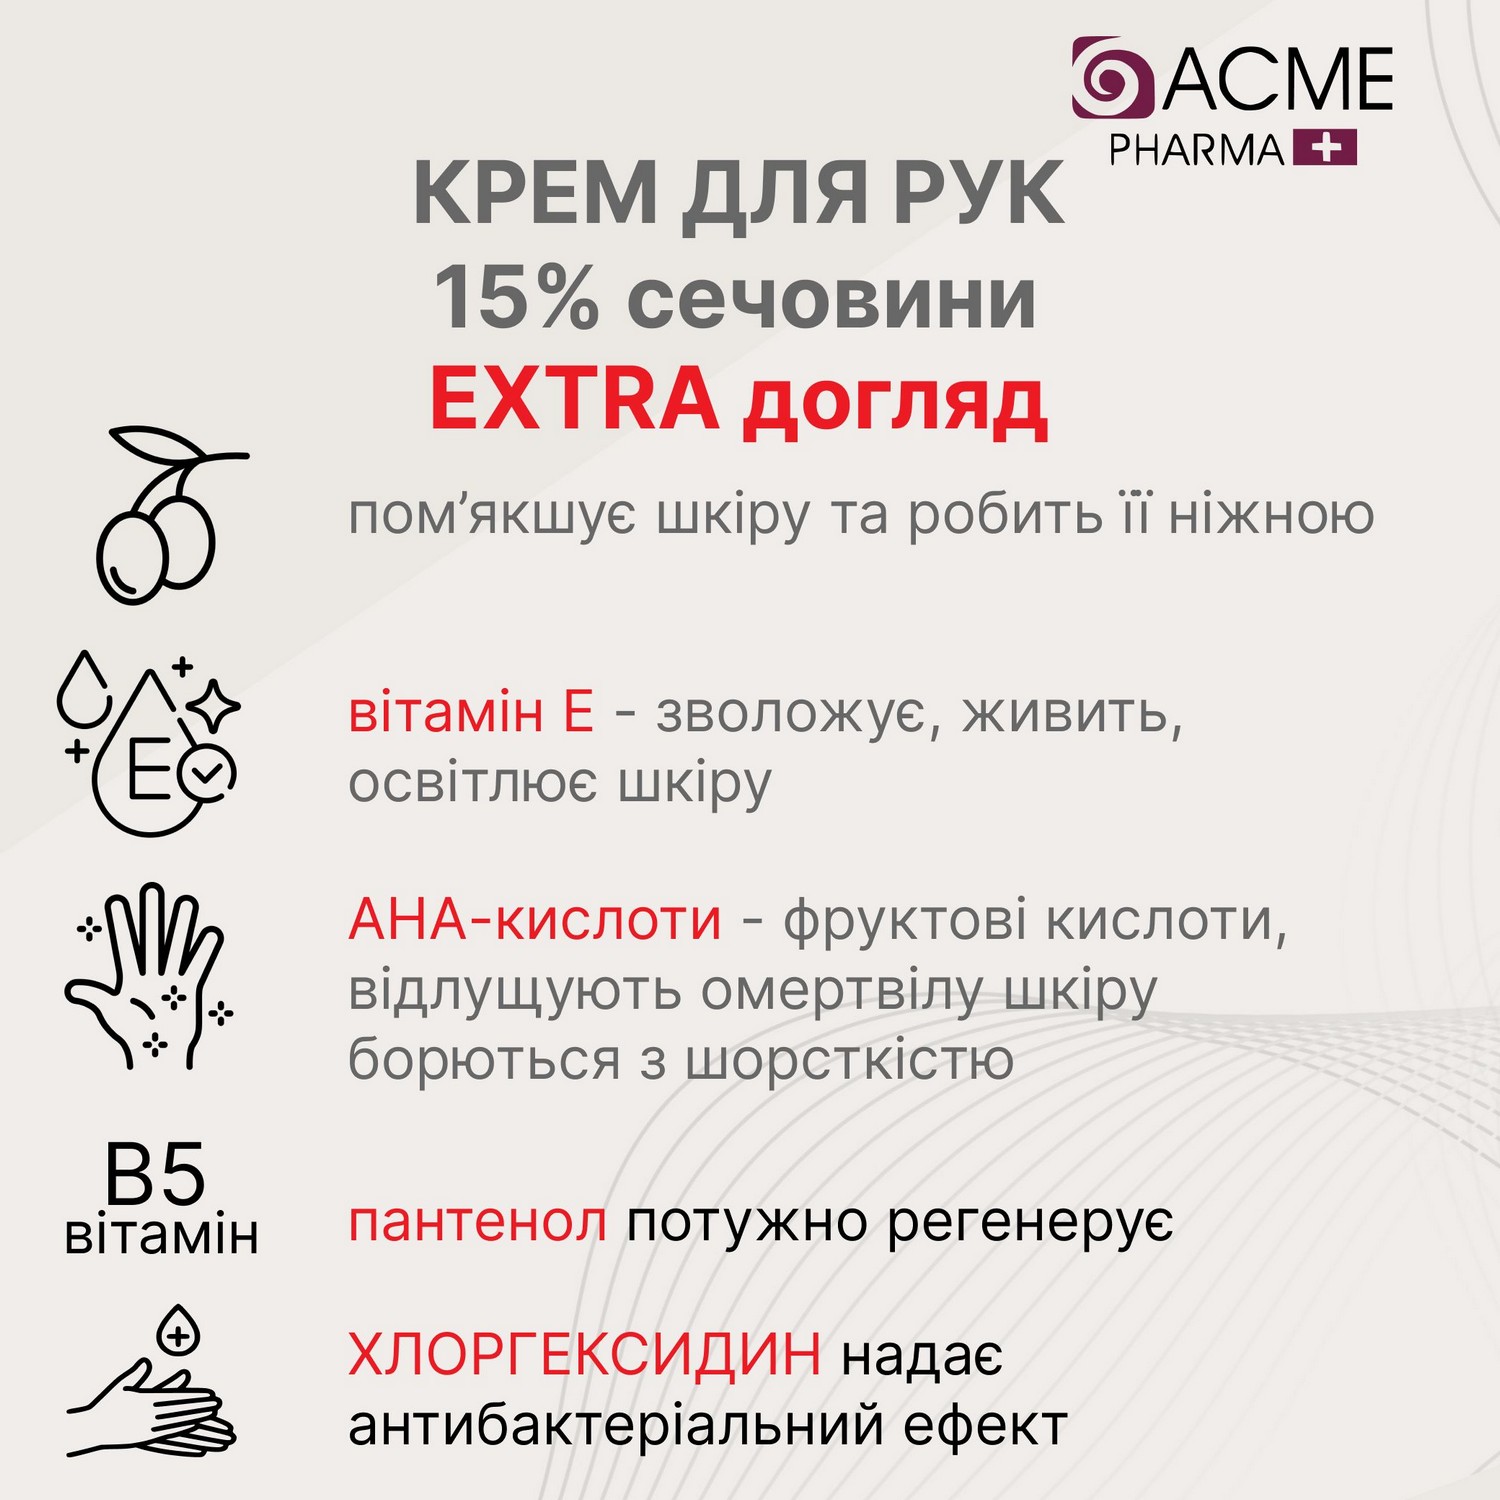 Крем для рук Acme Pharma Extra Care 4 в 1, із вмістом сечовини 15%, 90 мл - фото 5